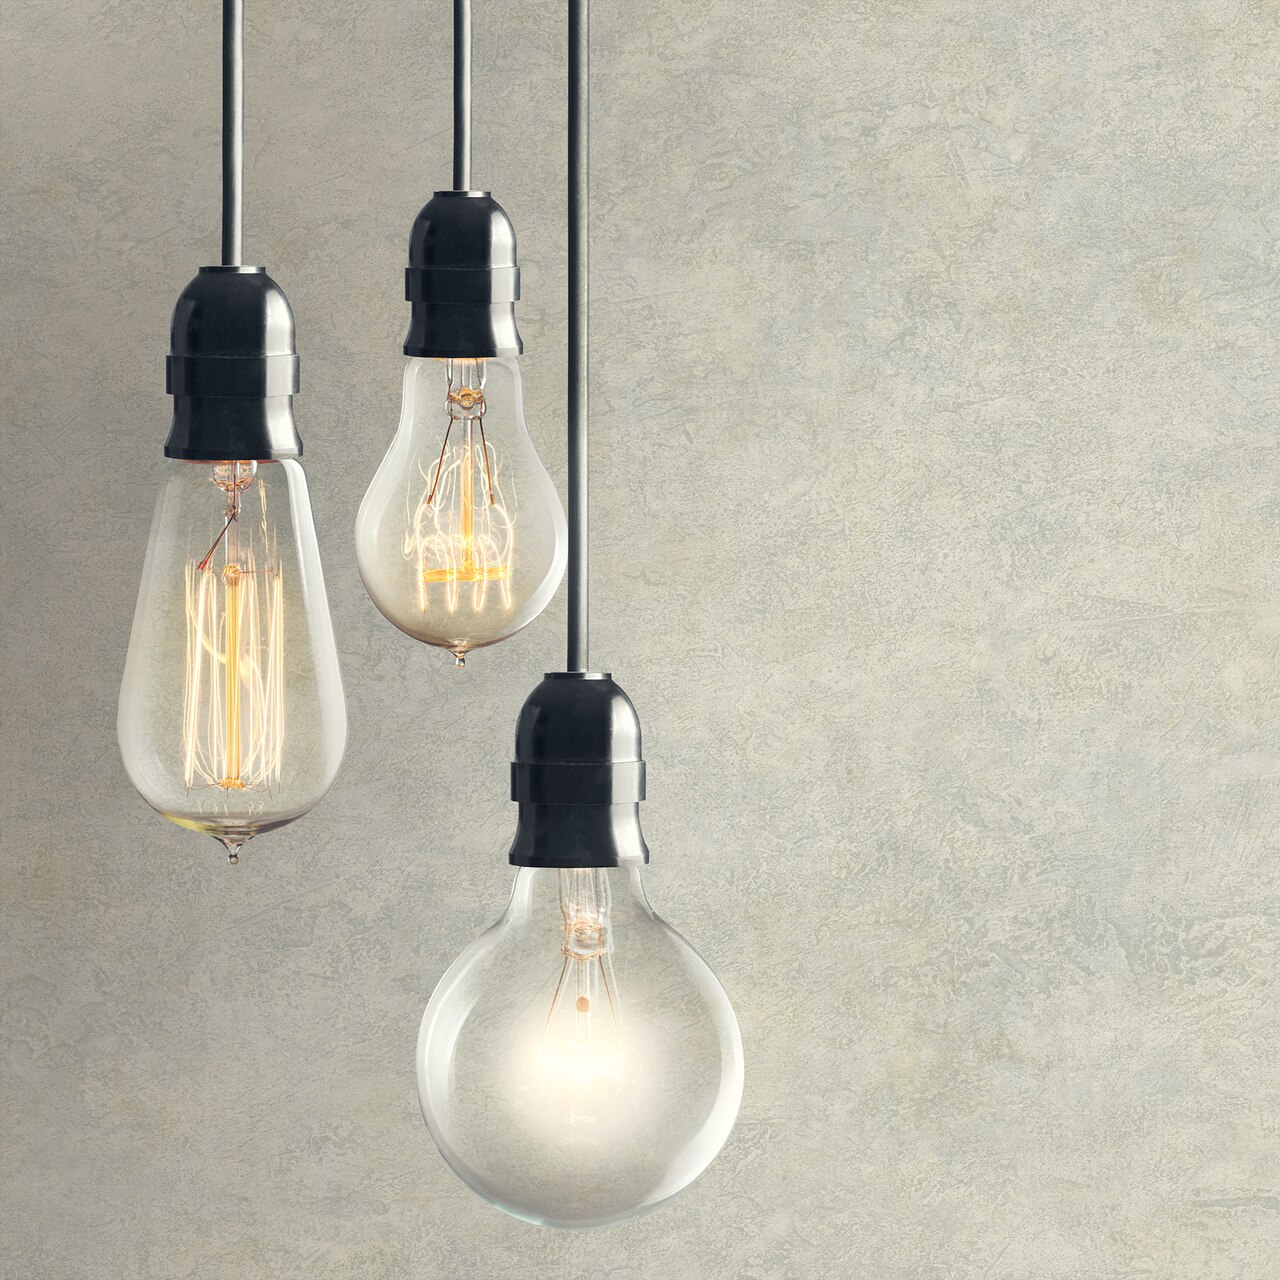 Incandescent Light Bulb - HD Wallpaper 